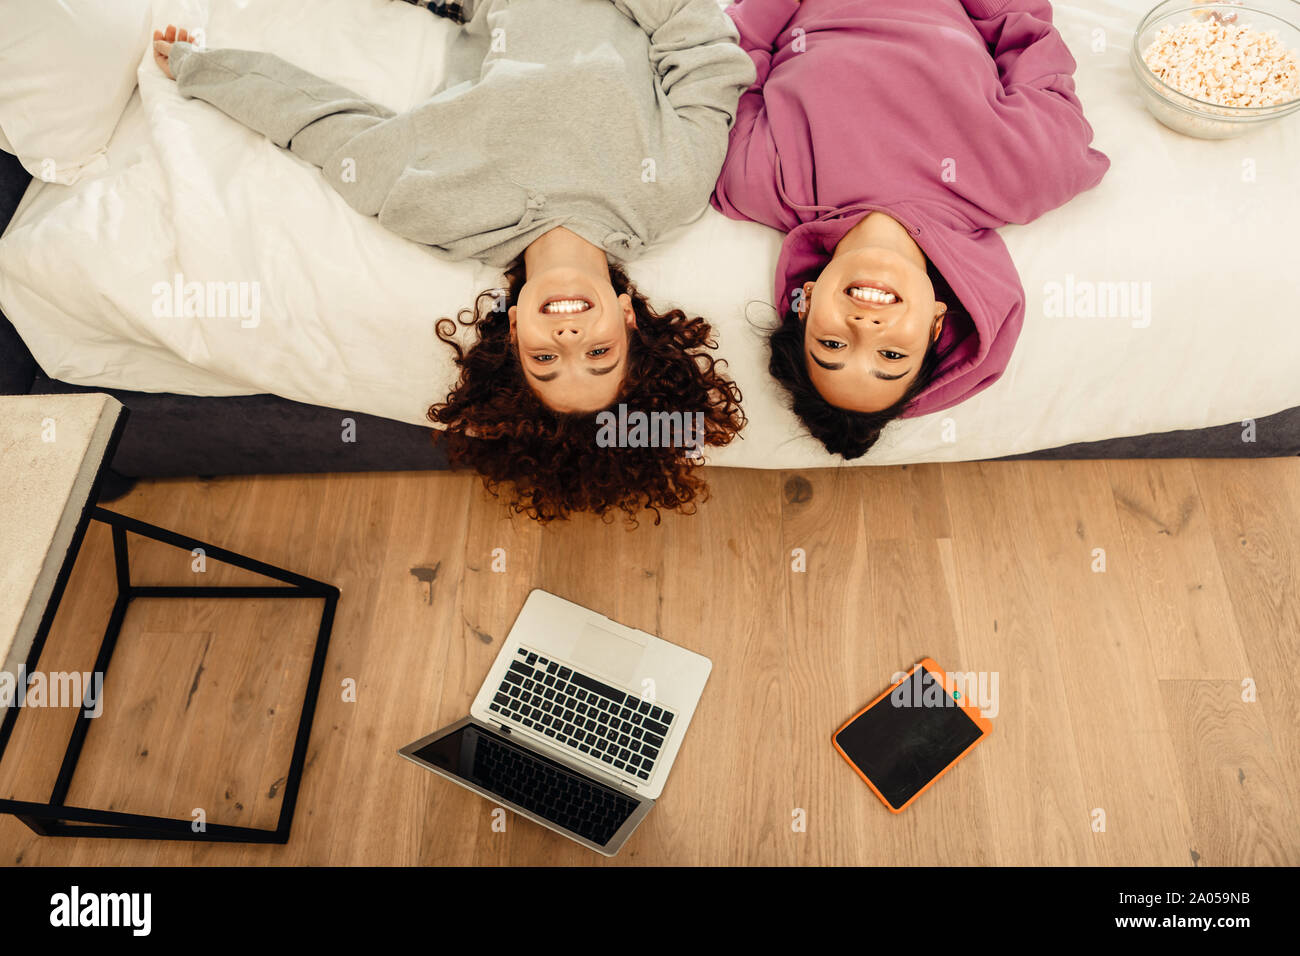 Fröhliches Mädchen im Bett liegend zusammen und während ihrer Tag lächeln Stockfoto